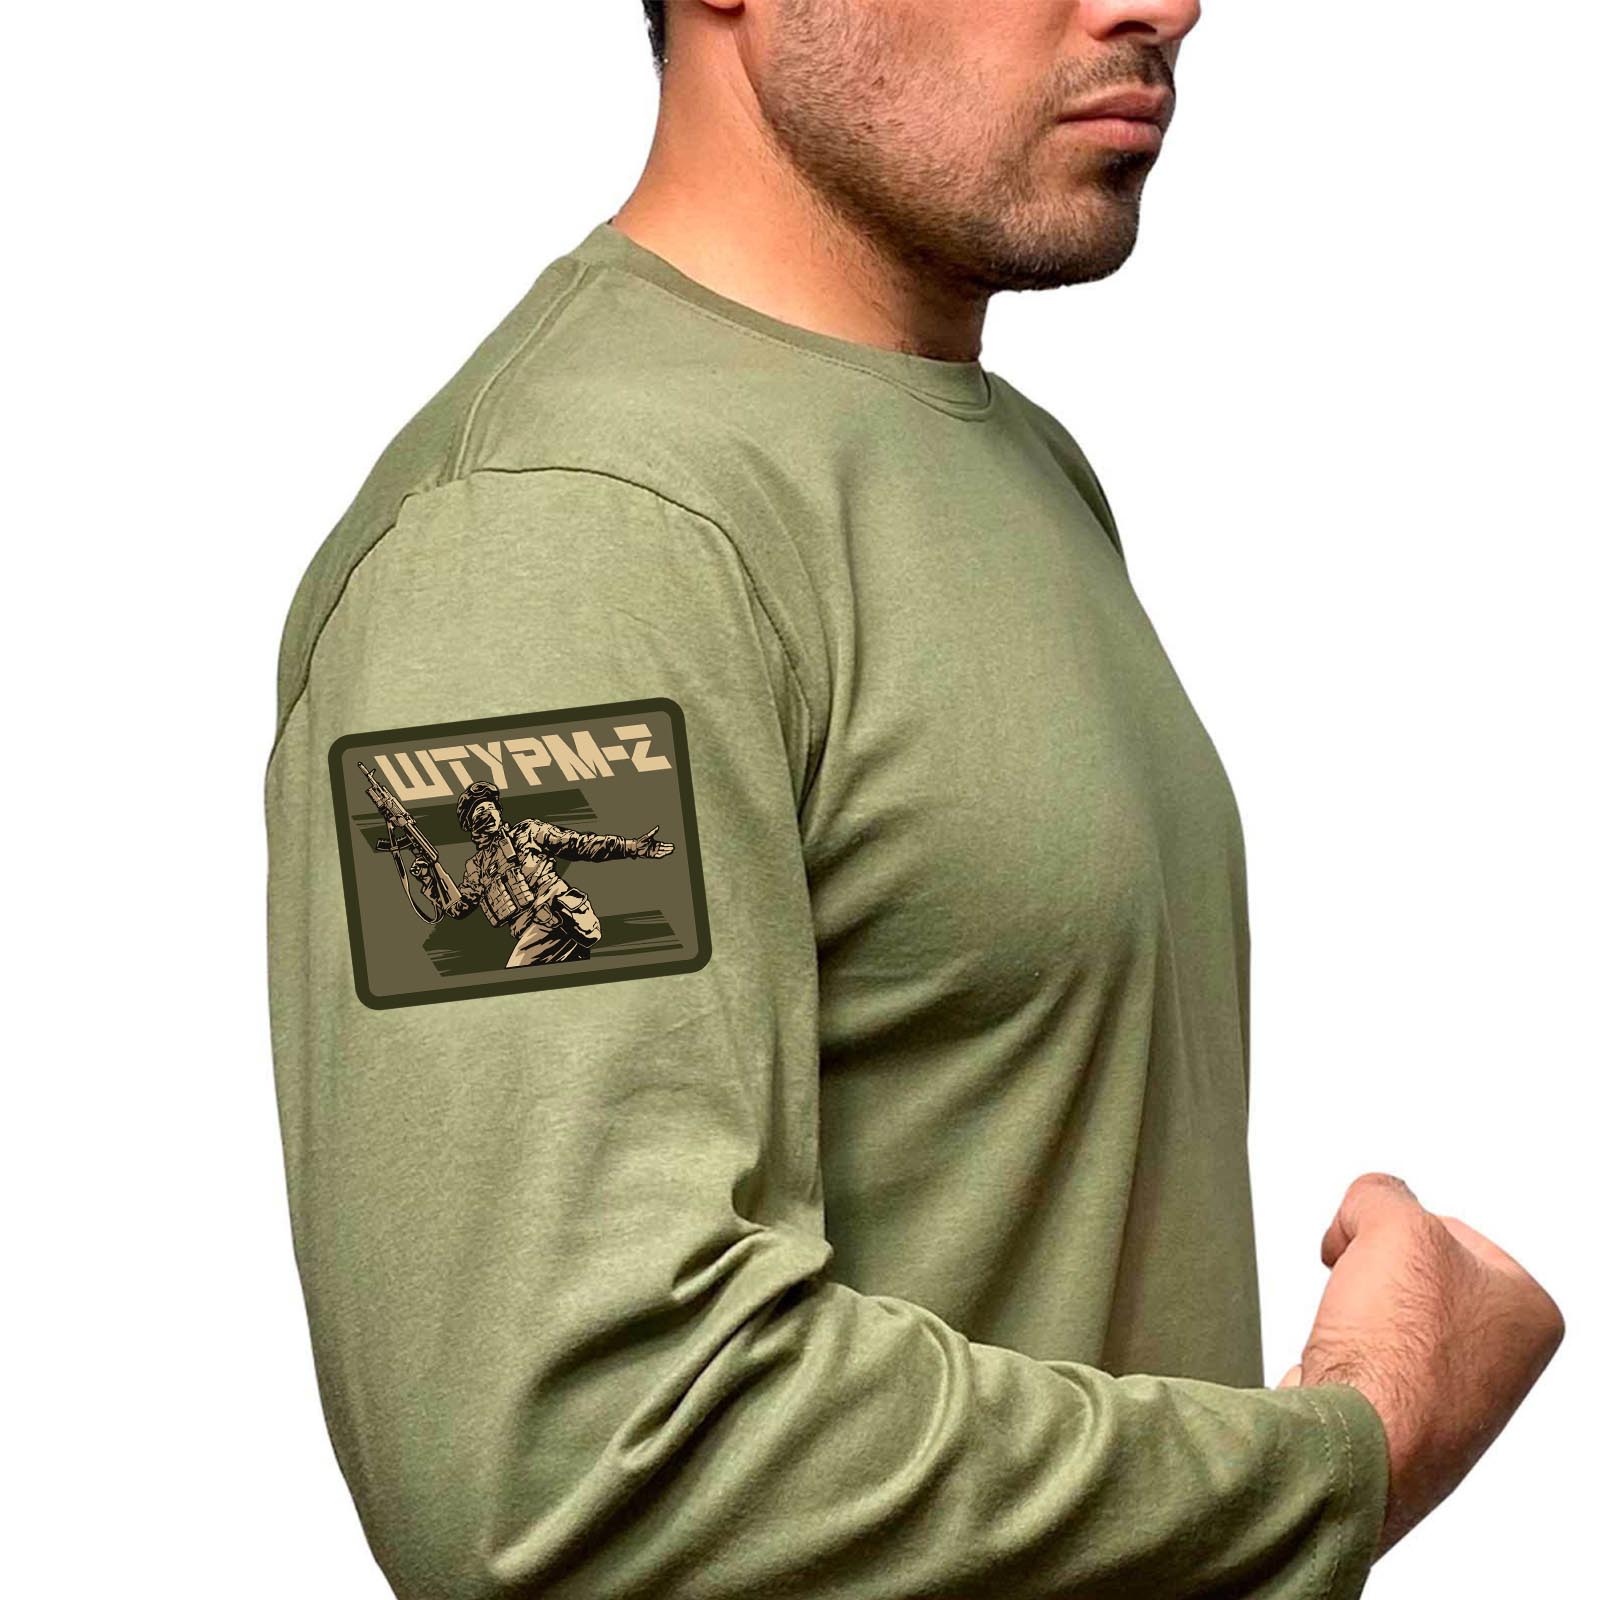 Купить футболку с длинным рукавом хаки-олива с термотрансфером "Штурм-Z" 